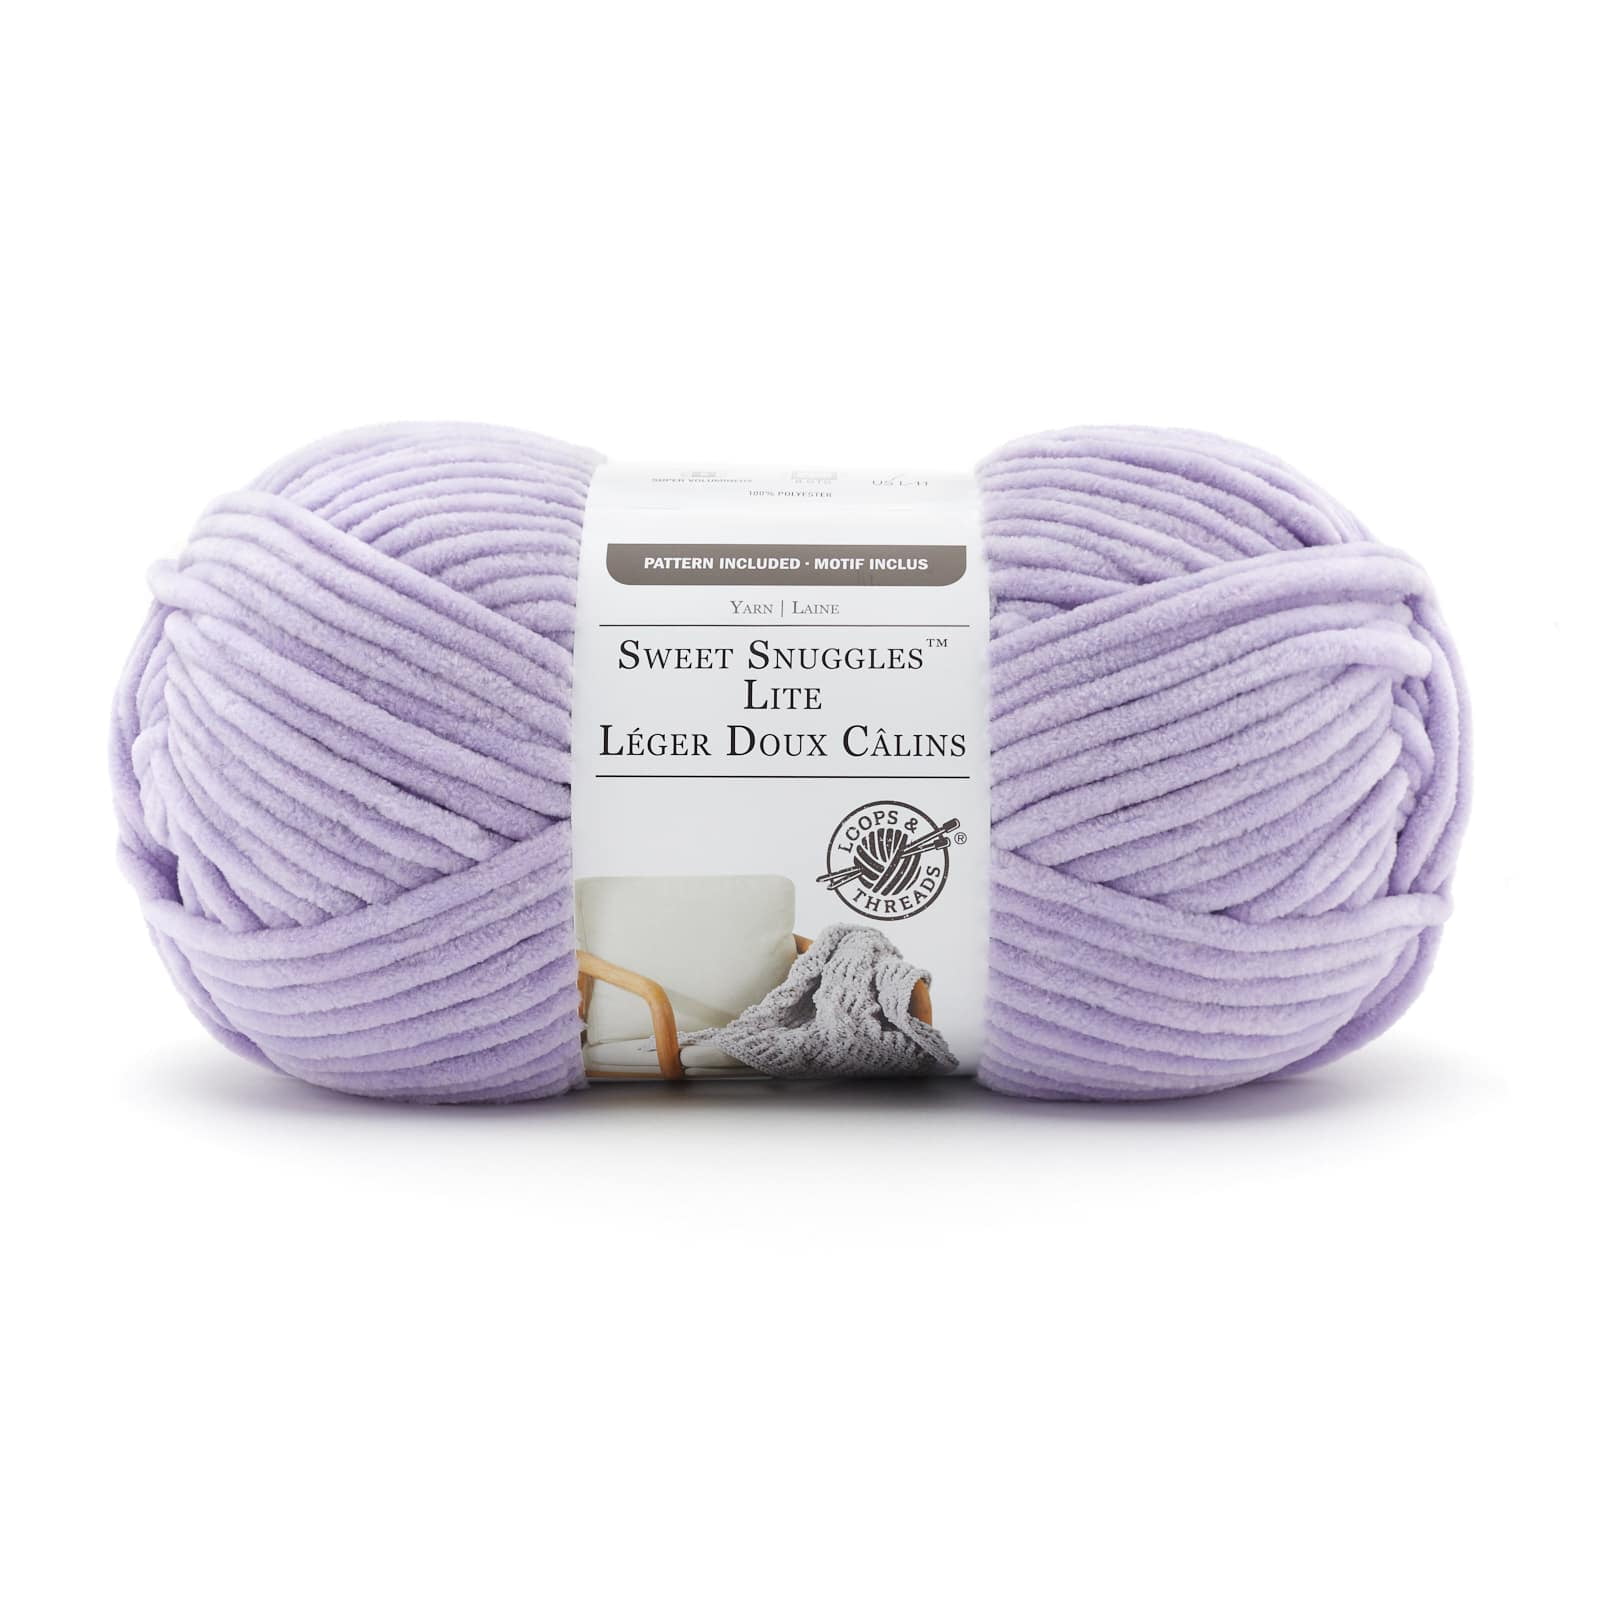 Loops & Threads Sweet Snuggles Lite Yarn - Dot Coastal - 9 oz